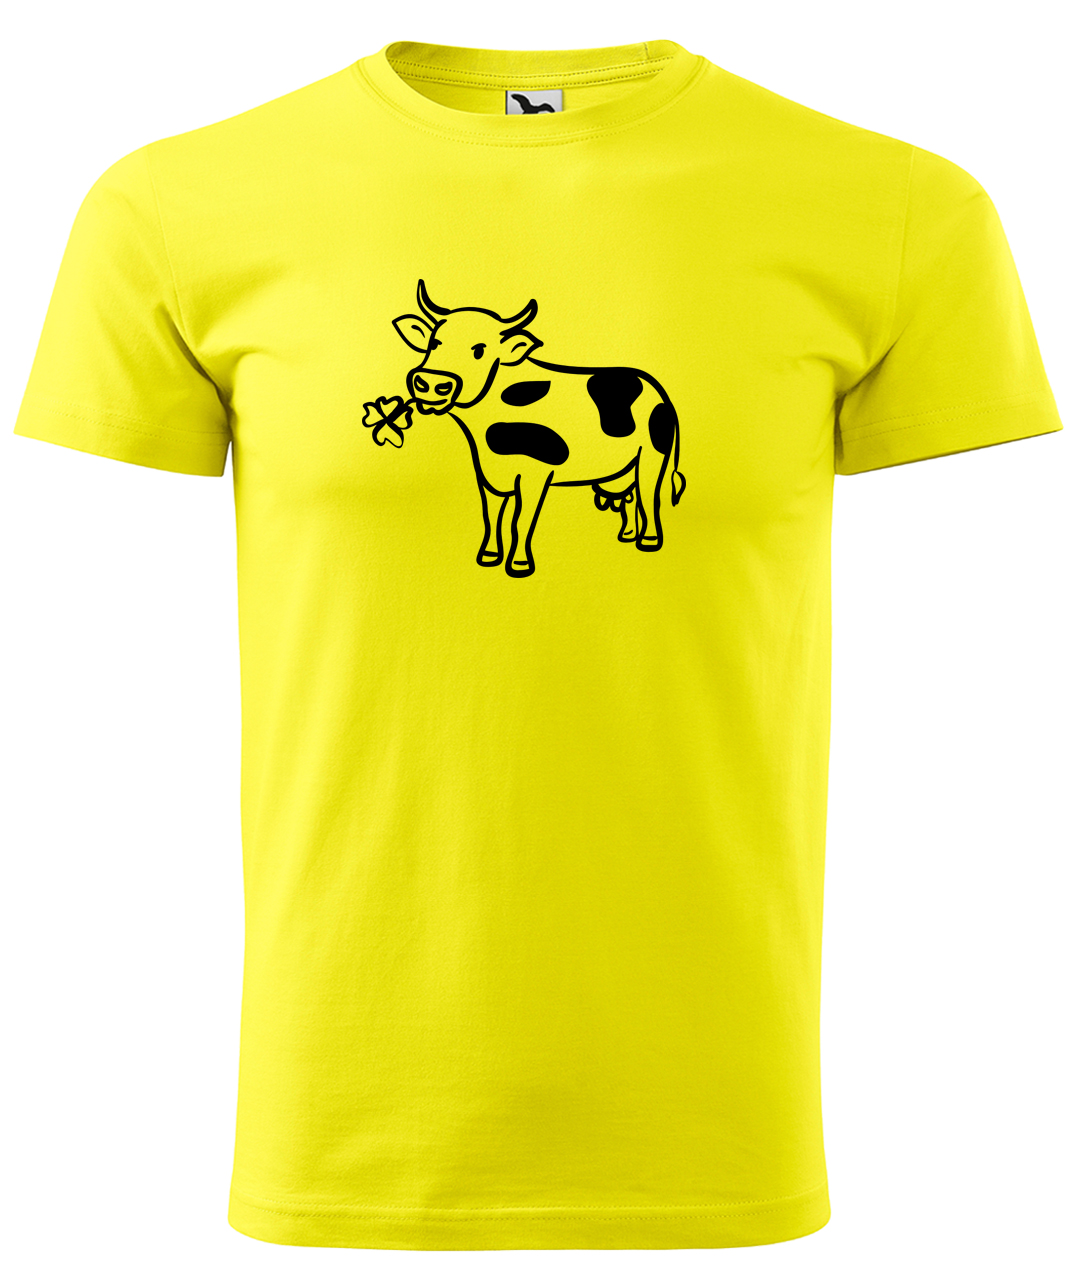 Dětské tričko s krávou - Kravička a jetel Velikost: 4 roky / 110 cm, Barva: Žlutá (04), Délka rukávu: Krátký rukáv